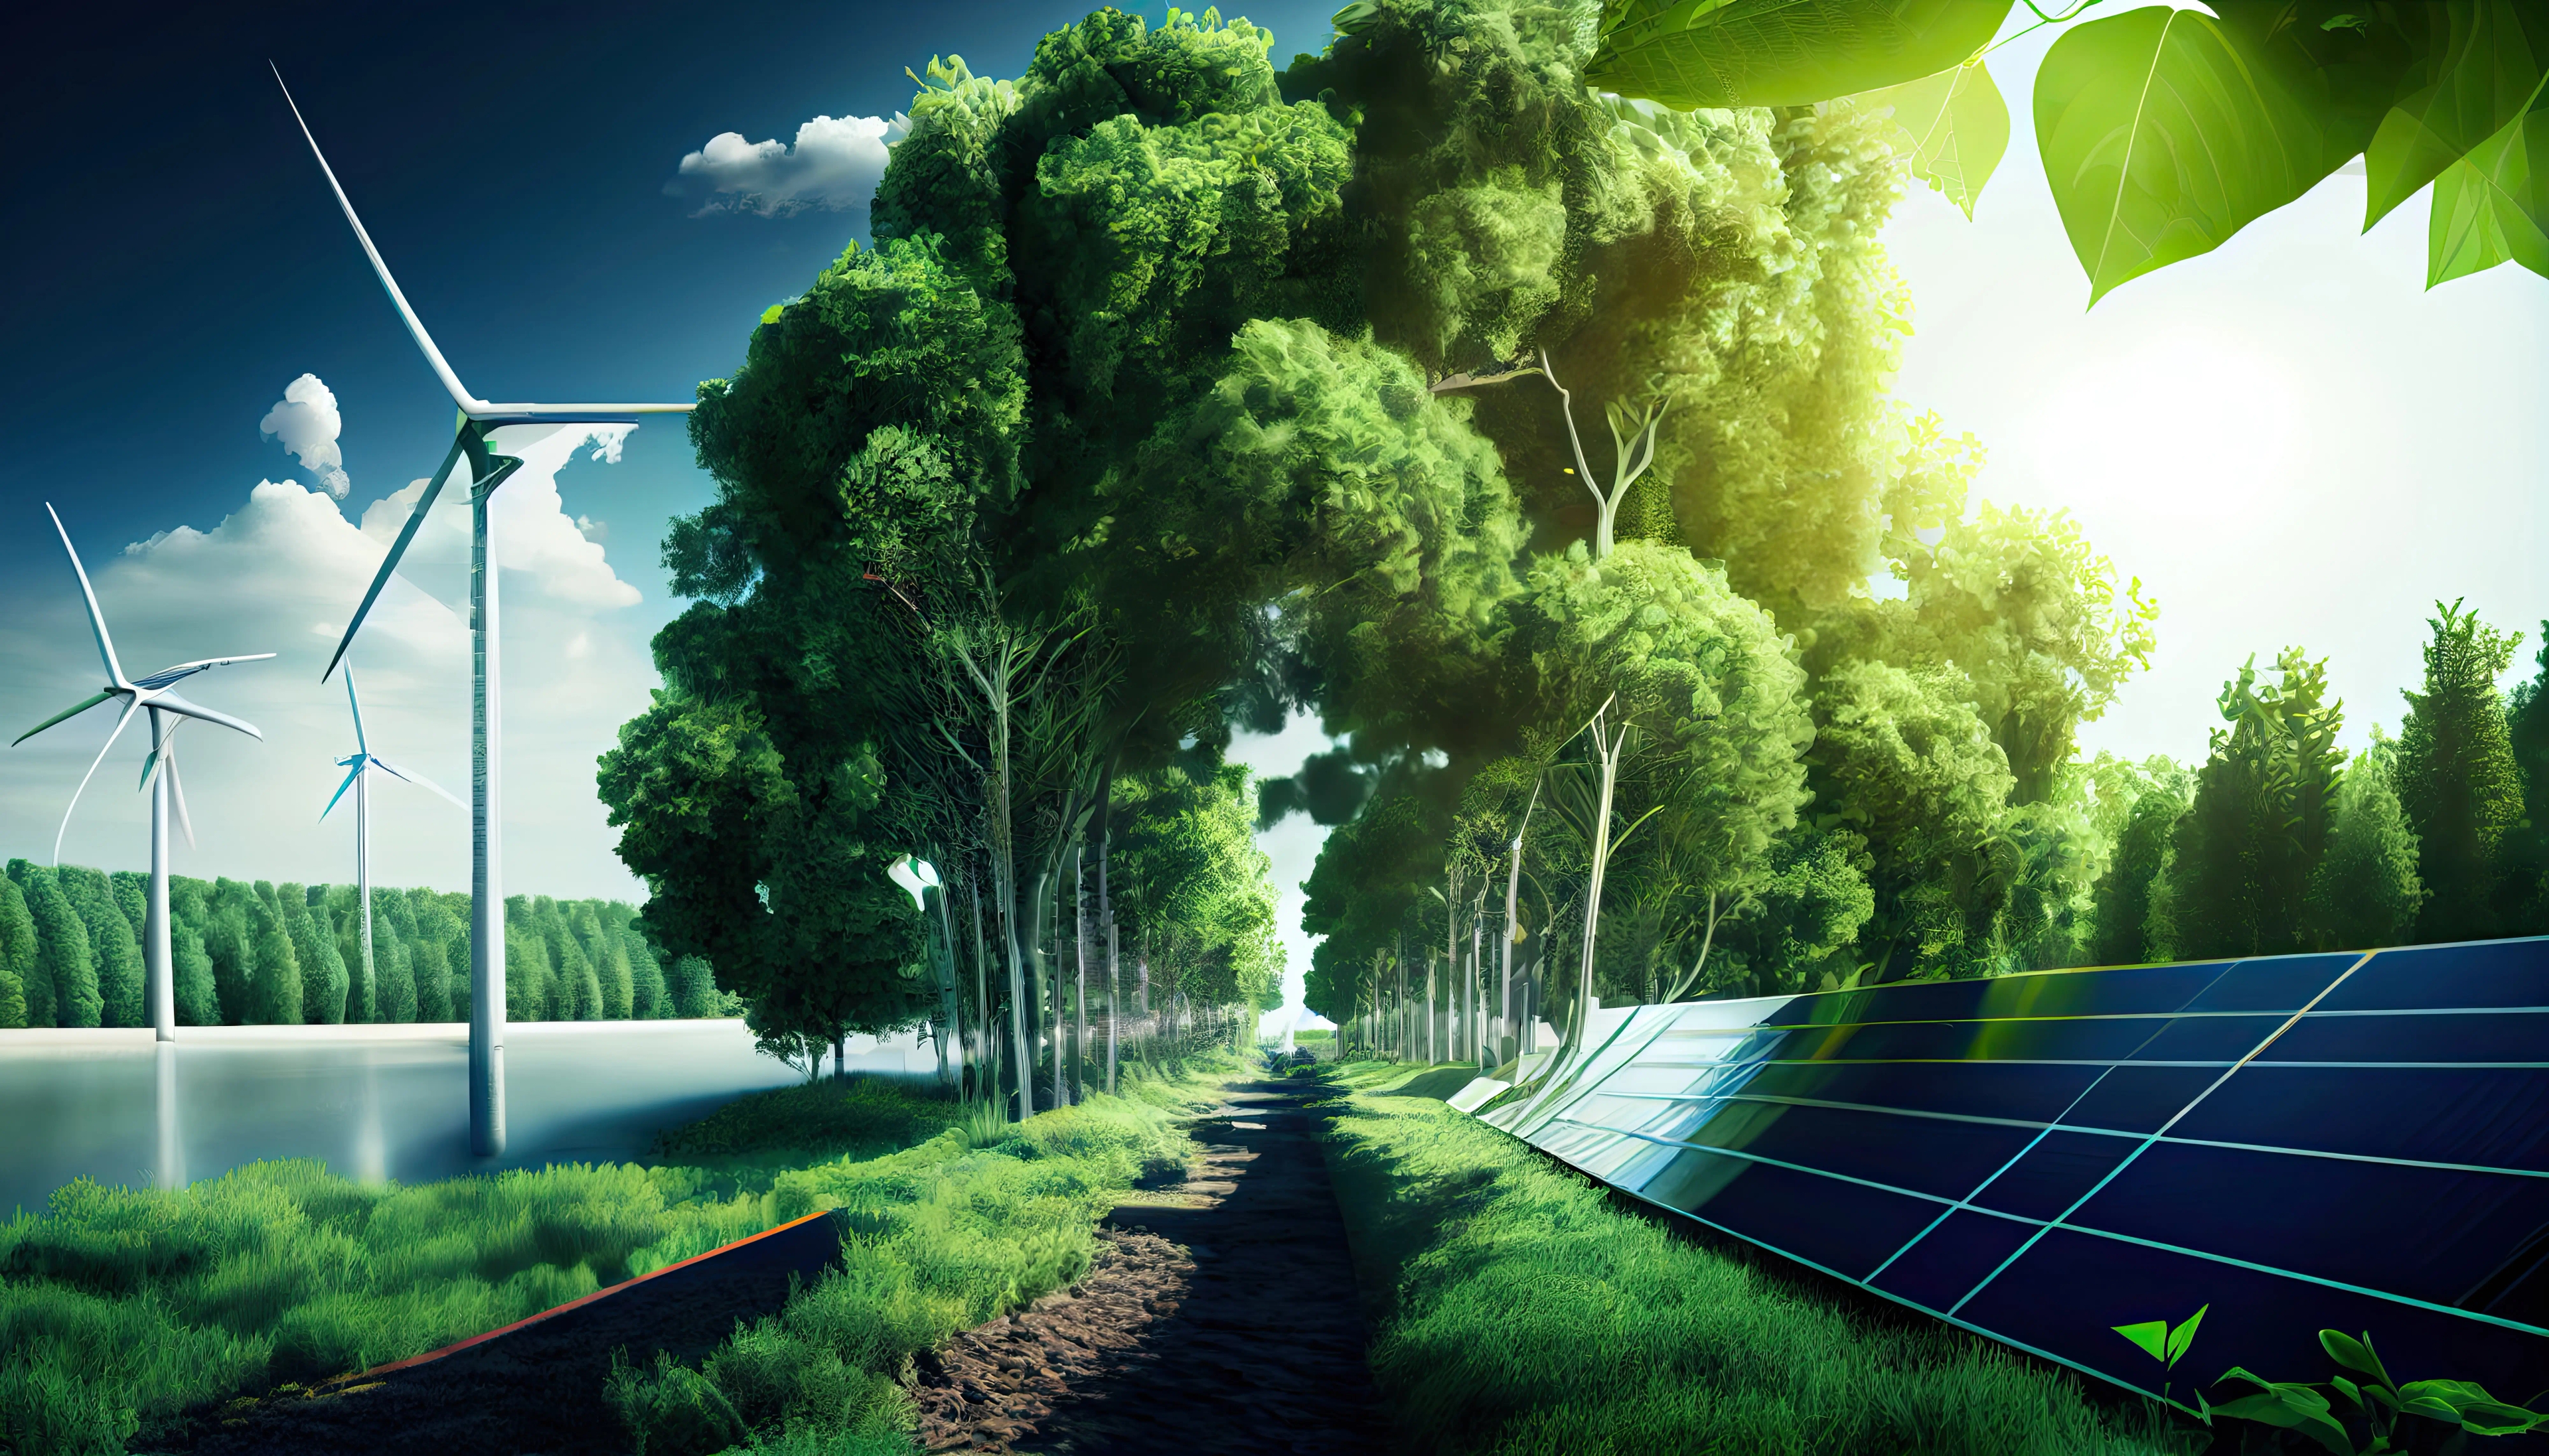 placas de energia solar, torre de energia eólica e ao fundo uma floresta cheia de árvores e folhas verdes